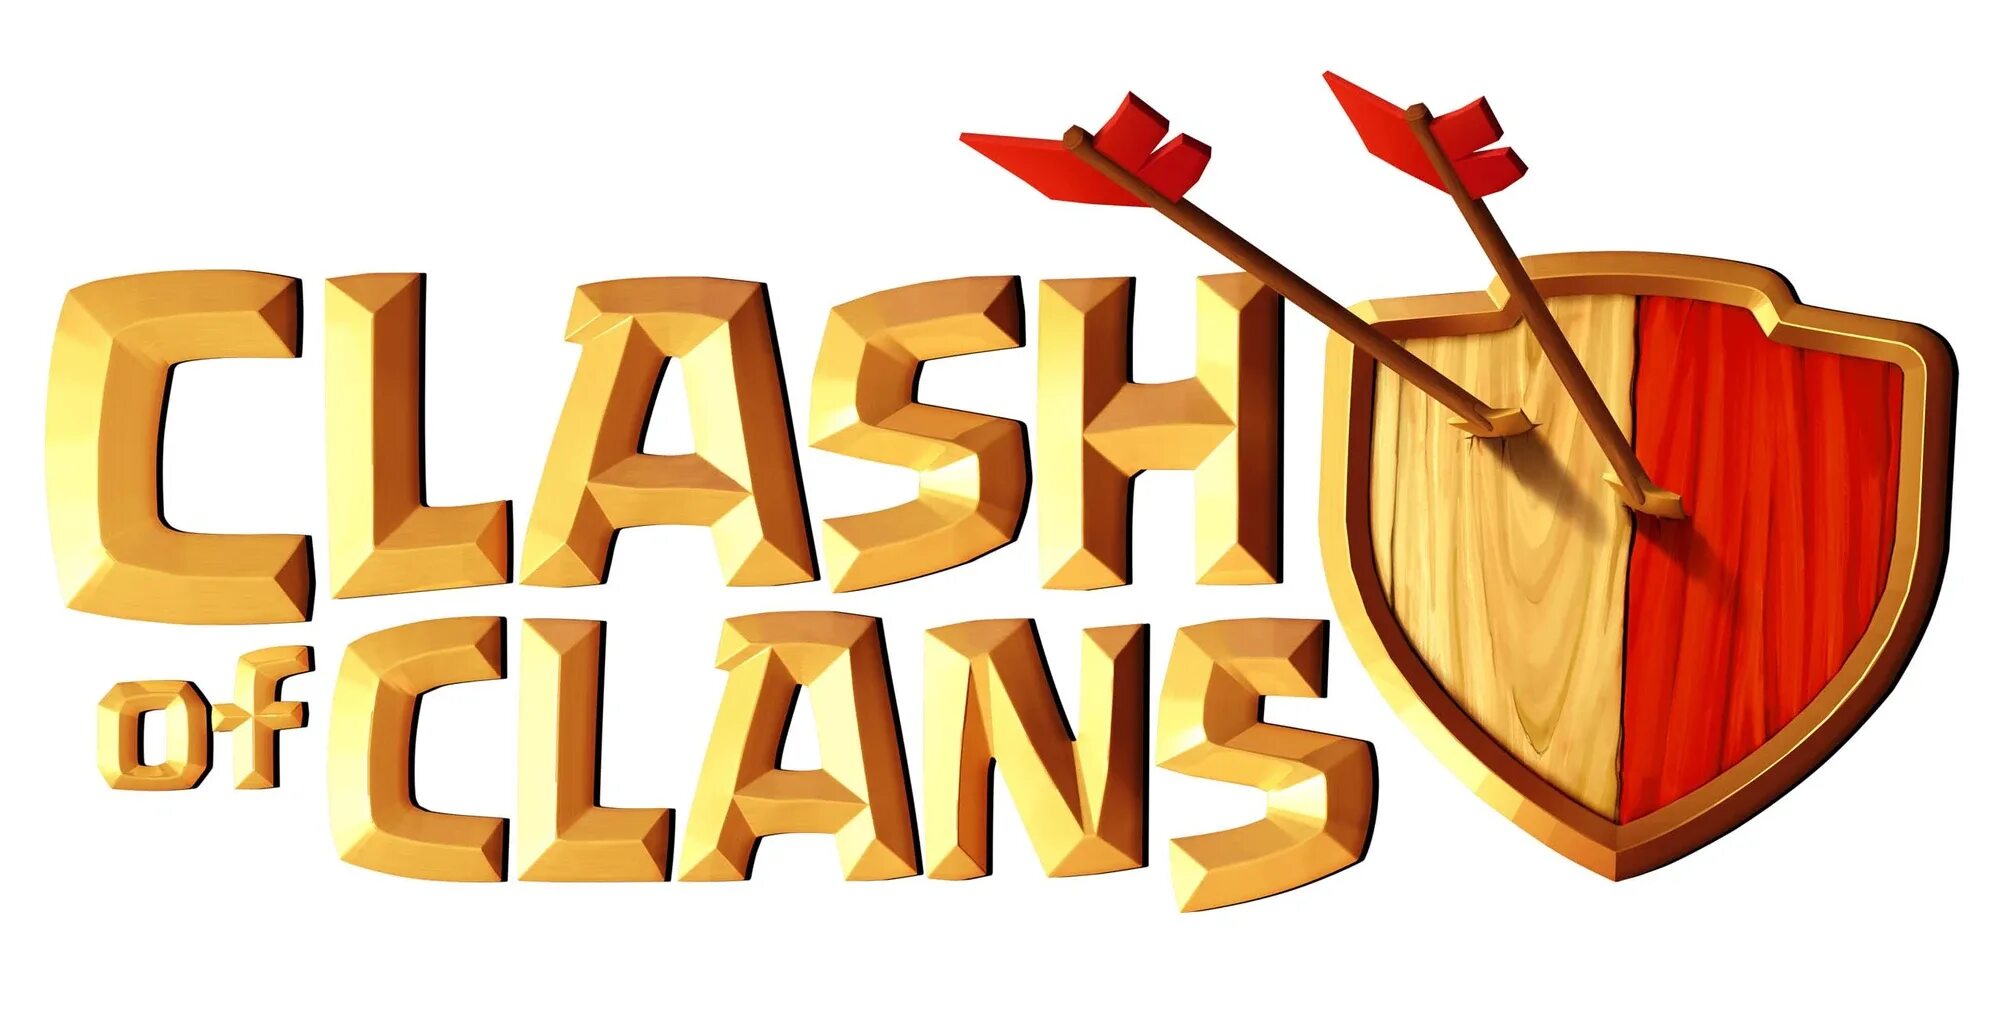 Clans clans com. Clash of Clans логотип. Clash of Clans надпись. Иконка клэш оф кланс. Клеш оф клесэнч надпичь.